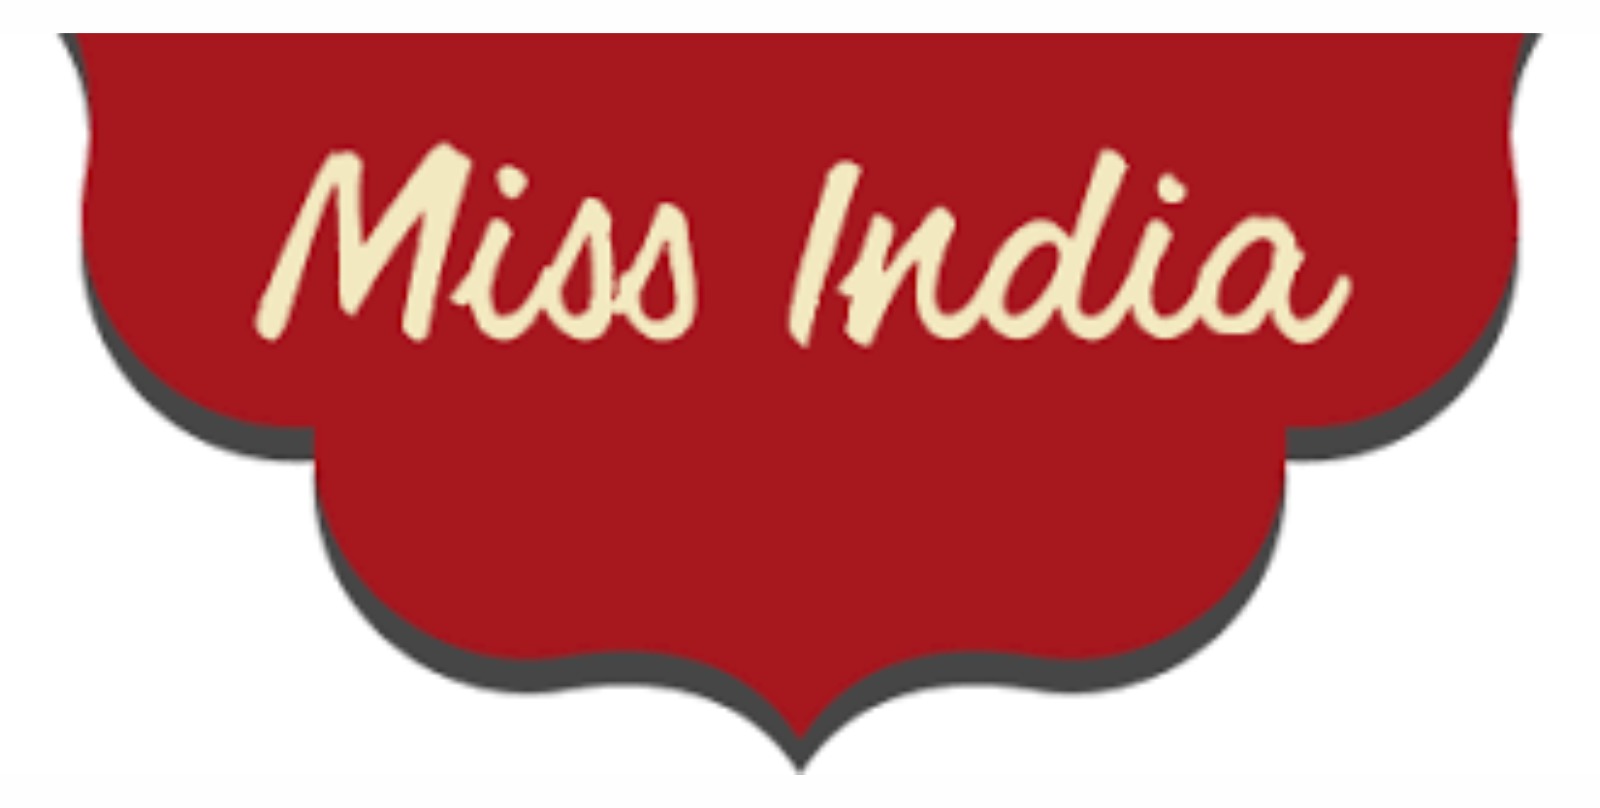 miss india menu prices australia